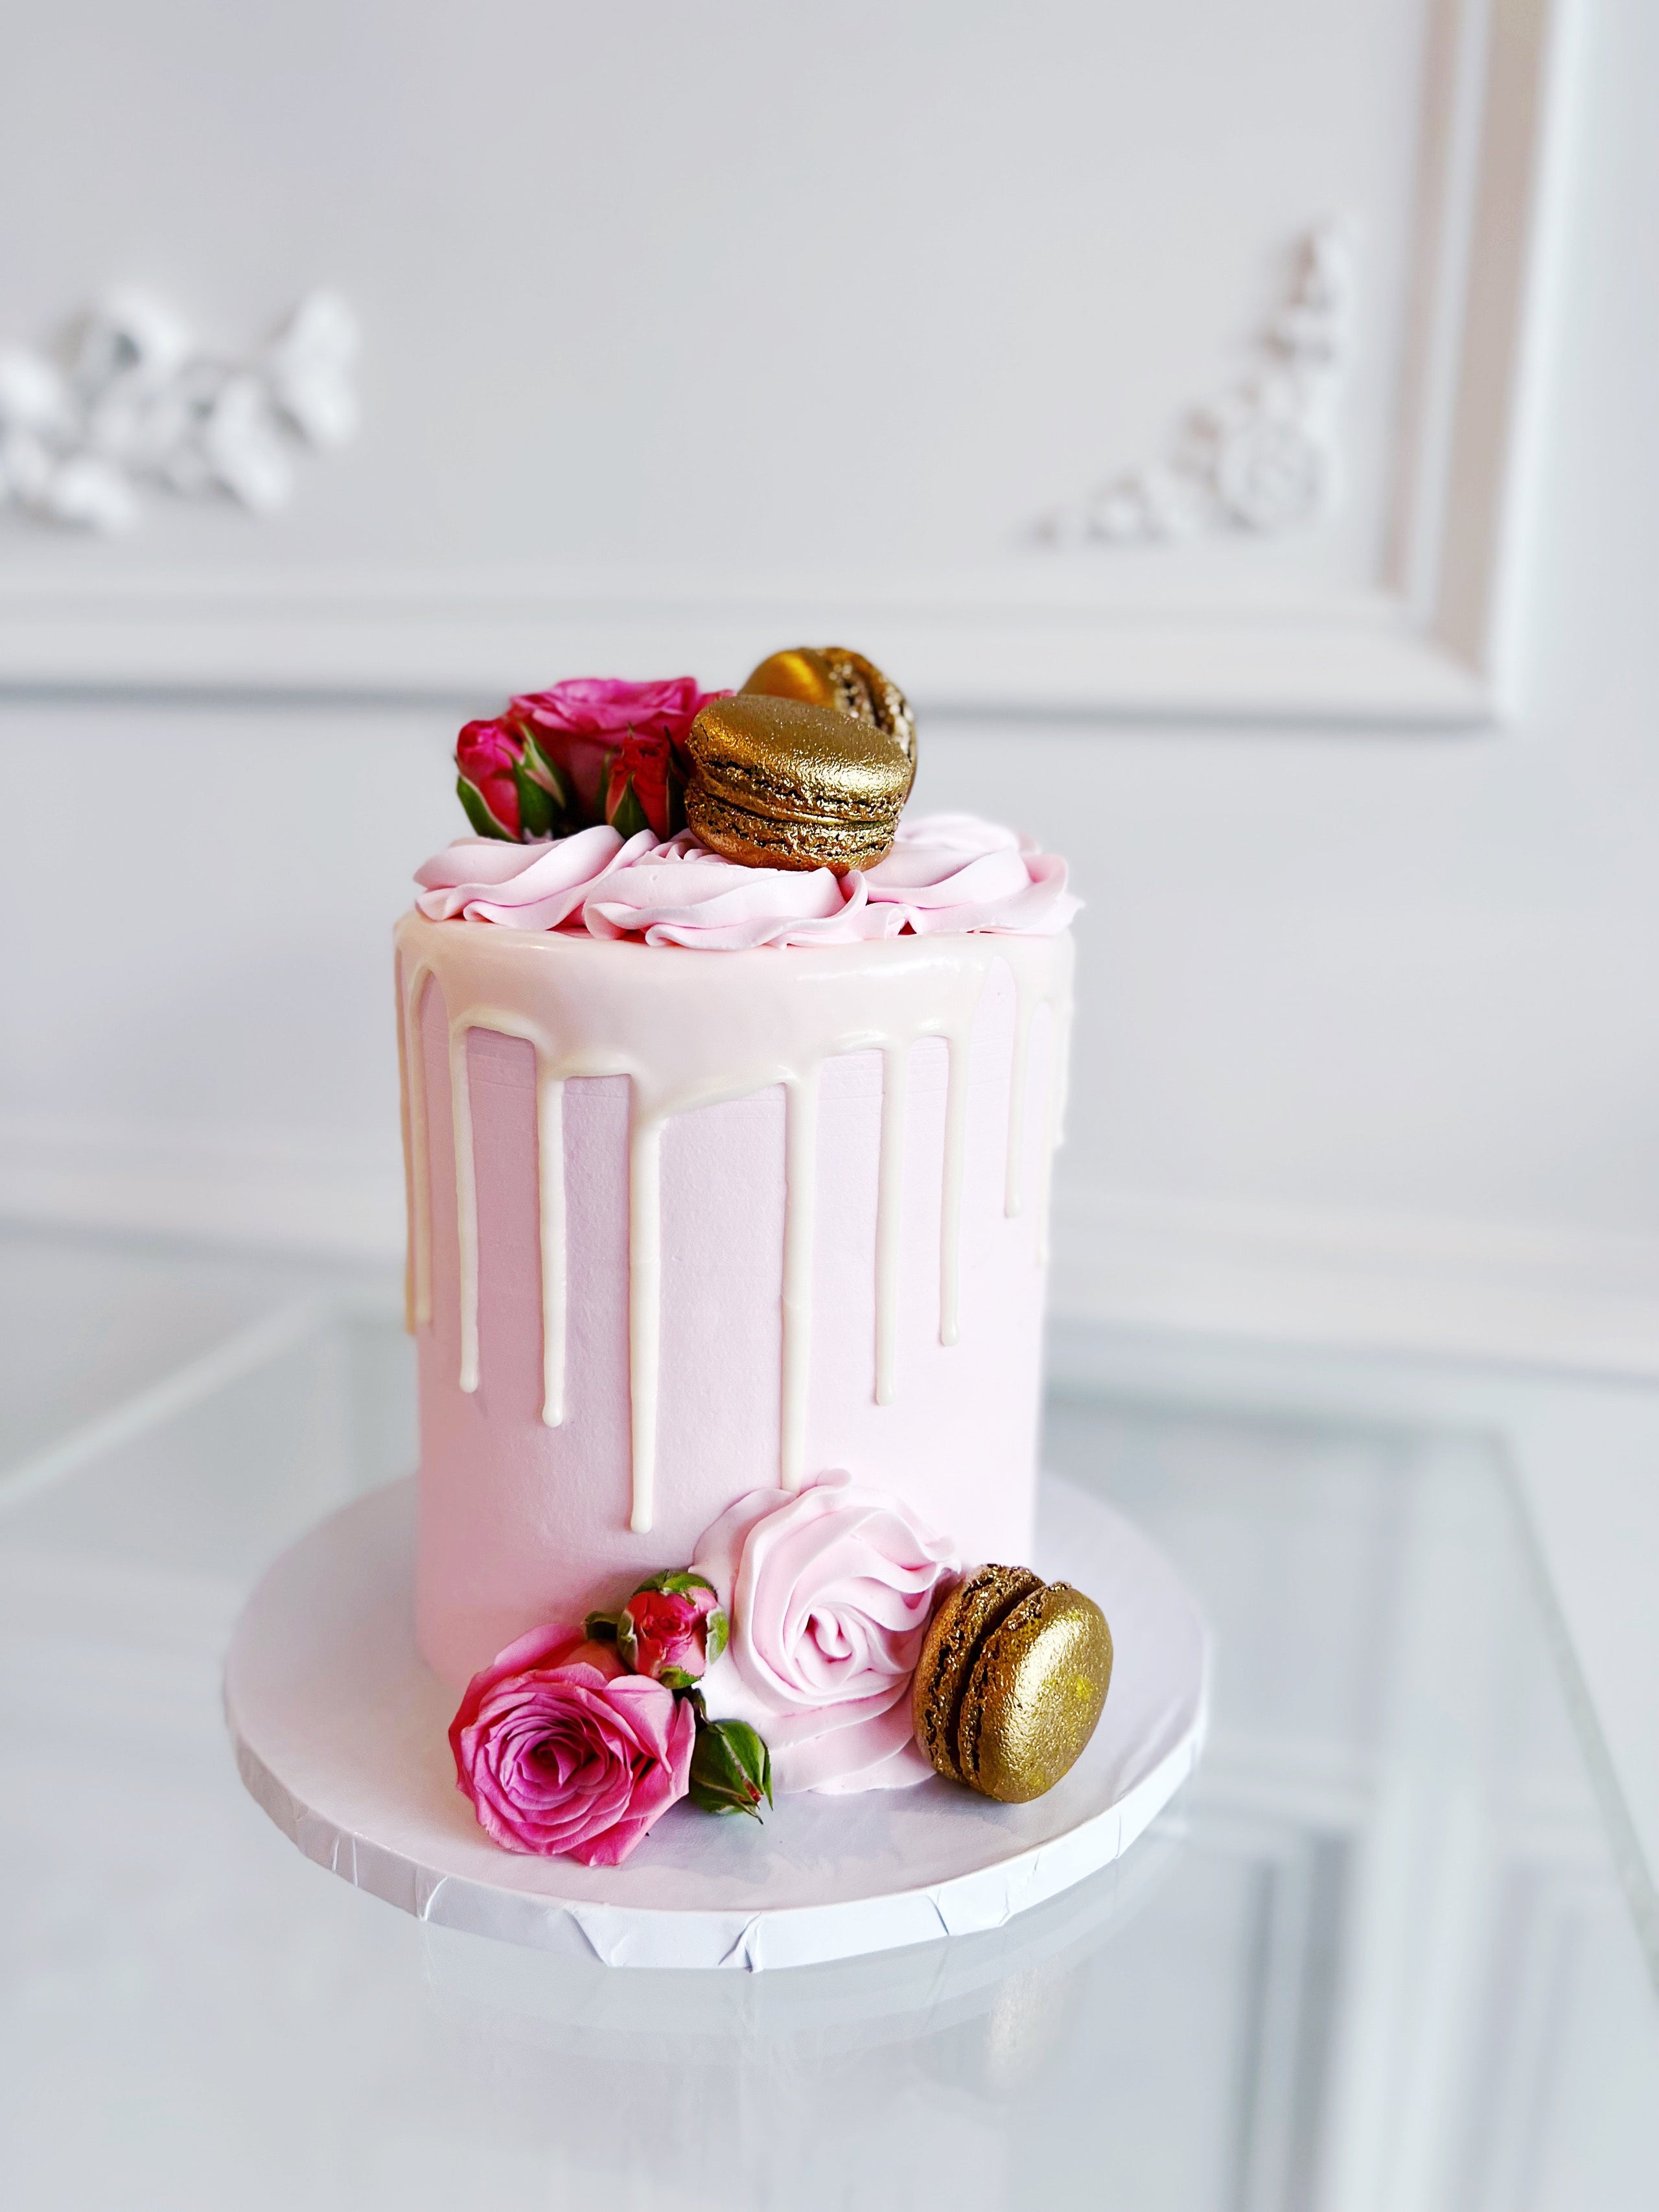 Designer Cakes Online, Latest Cake Designs for Birthday –